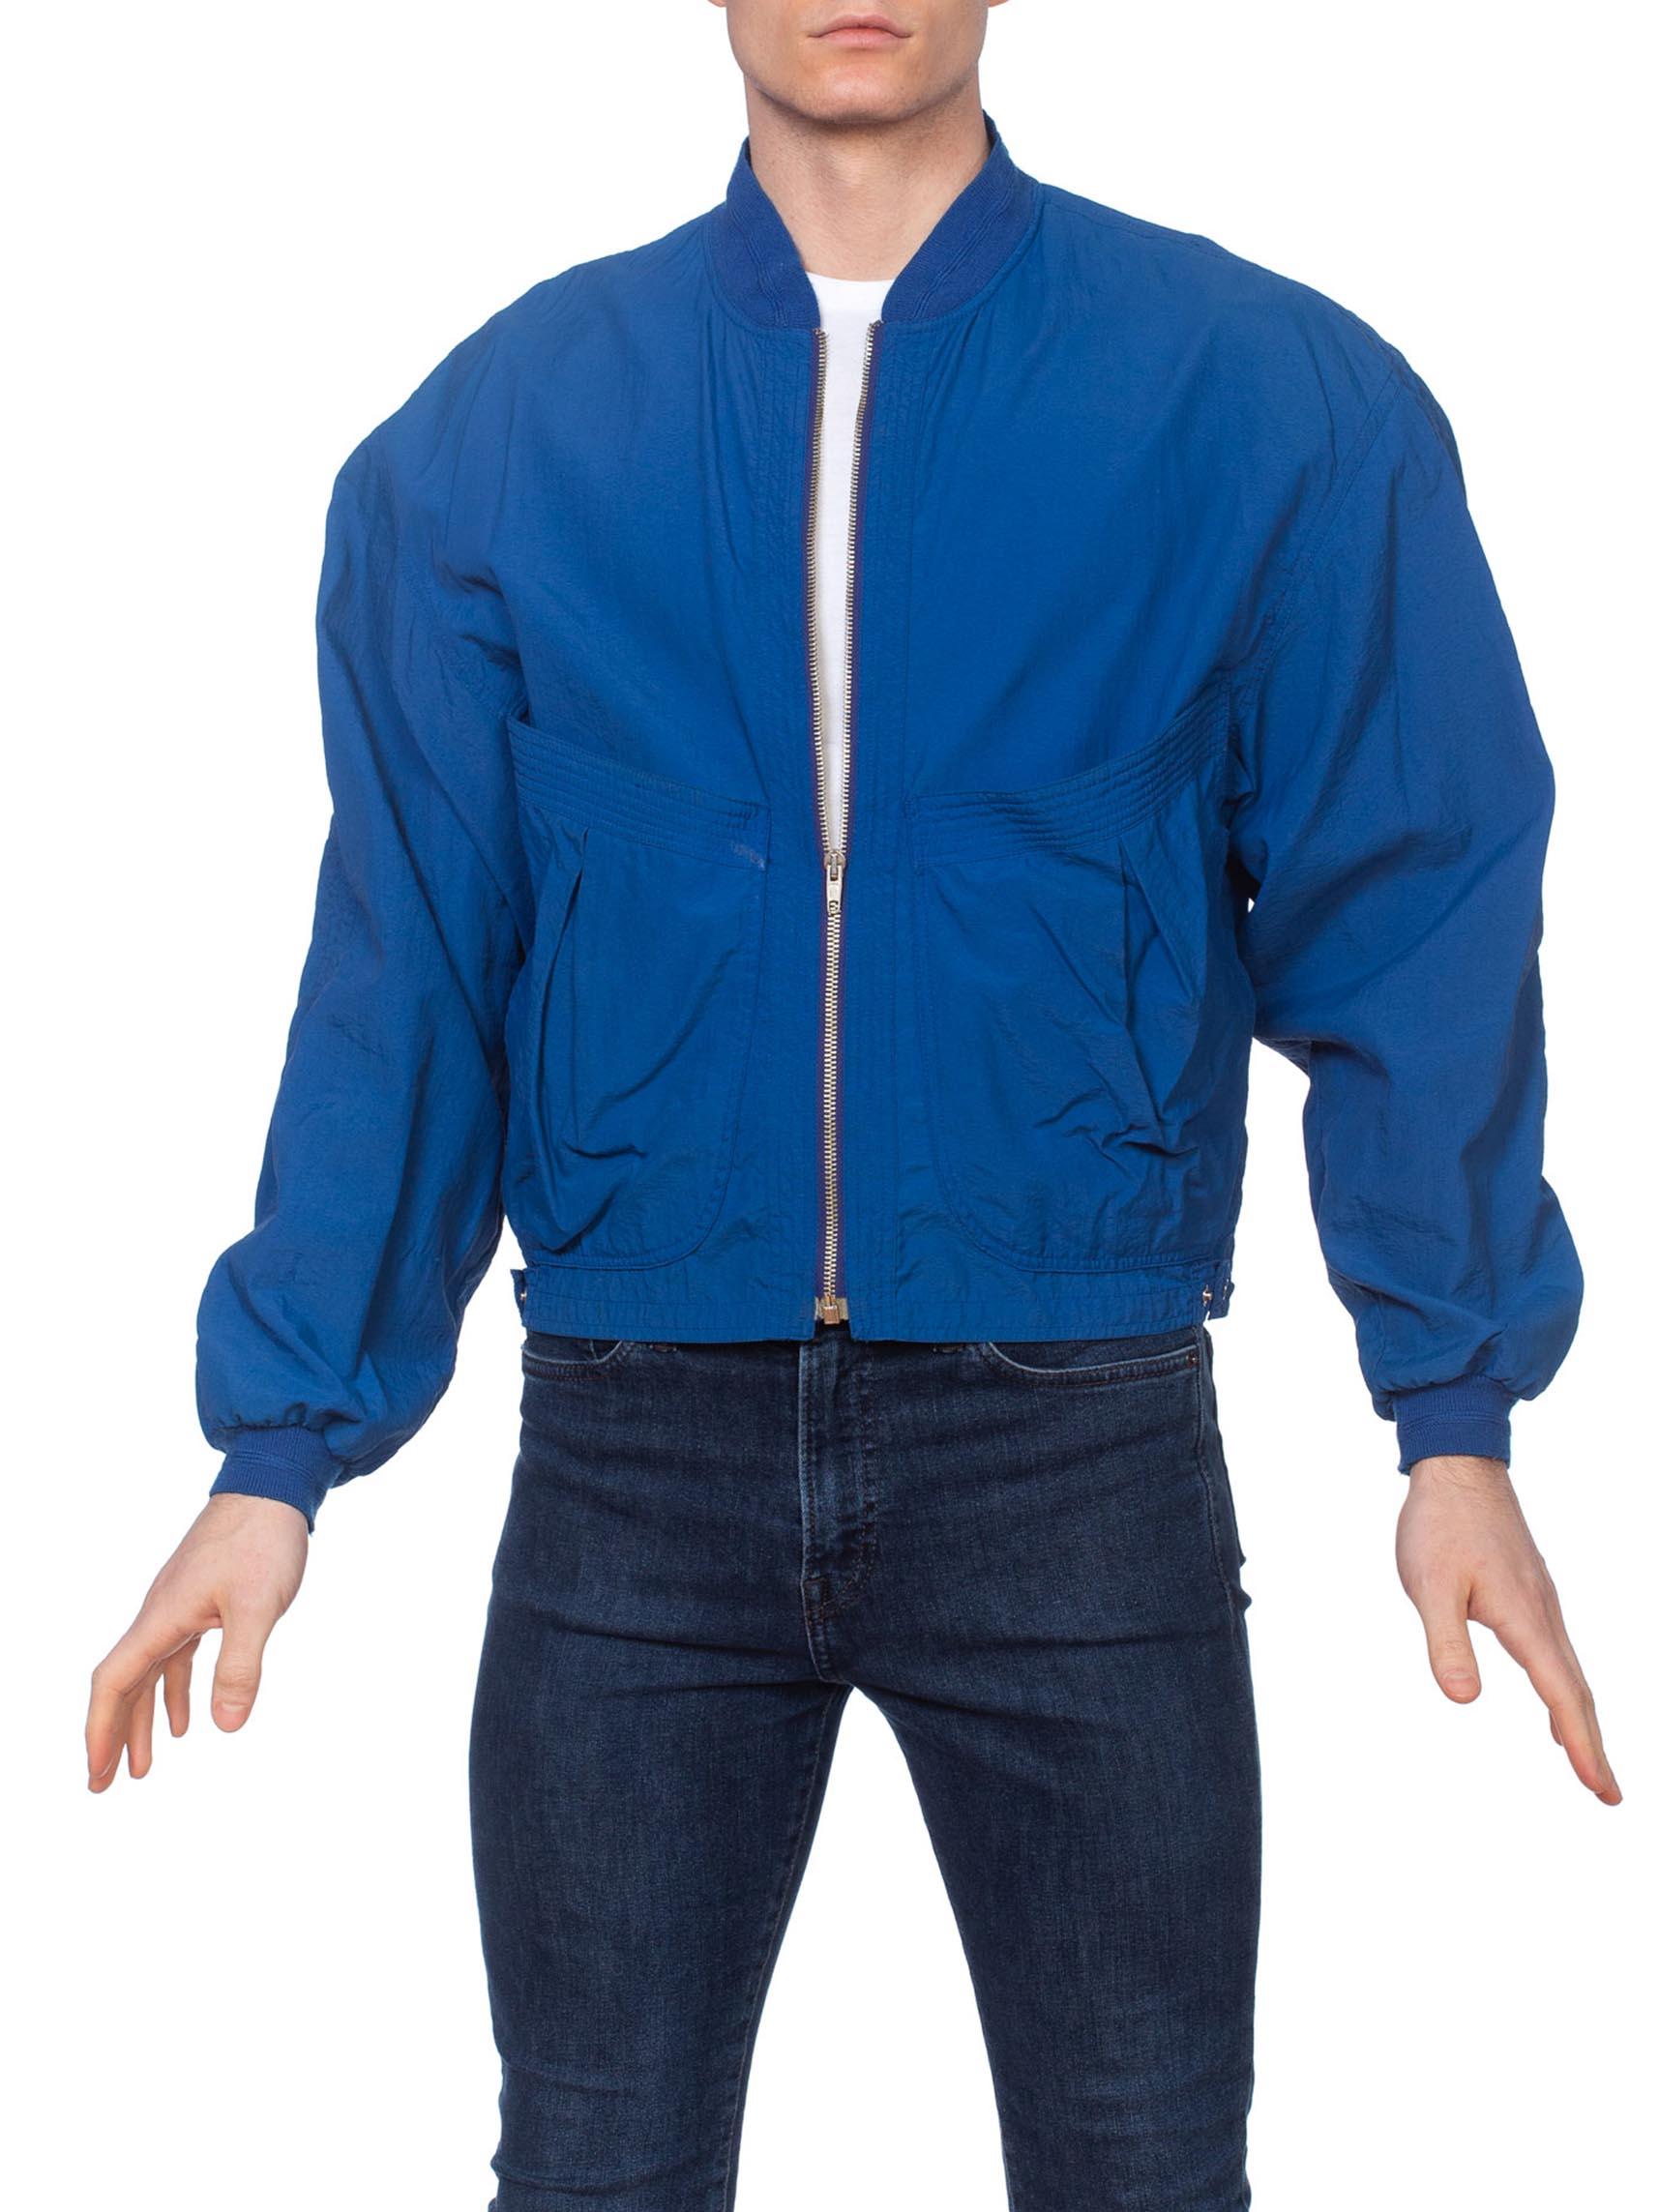 utility nylon jacket